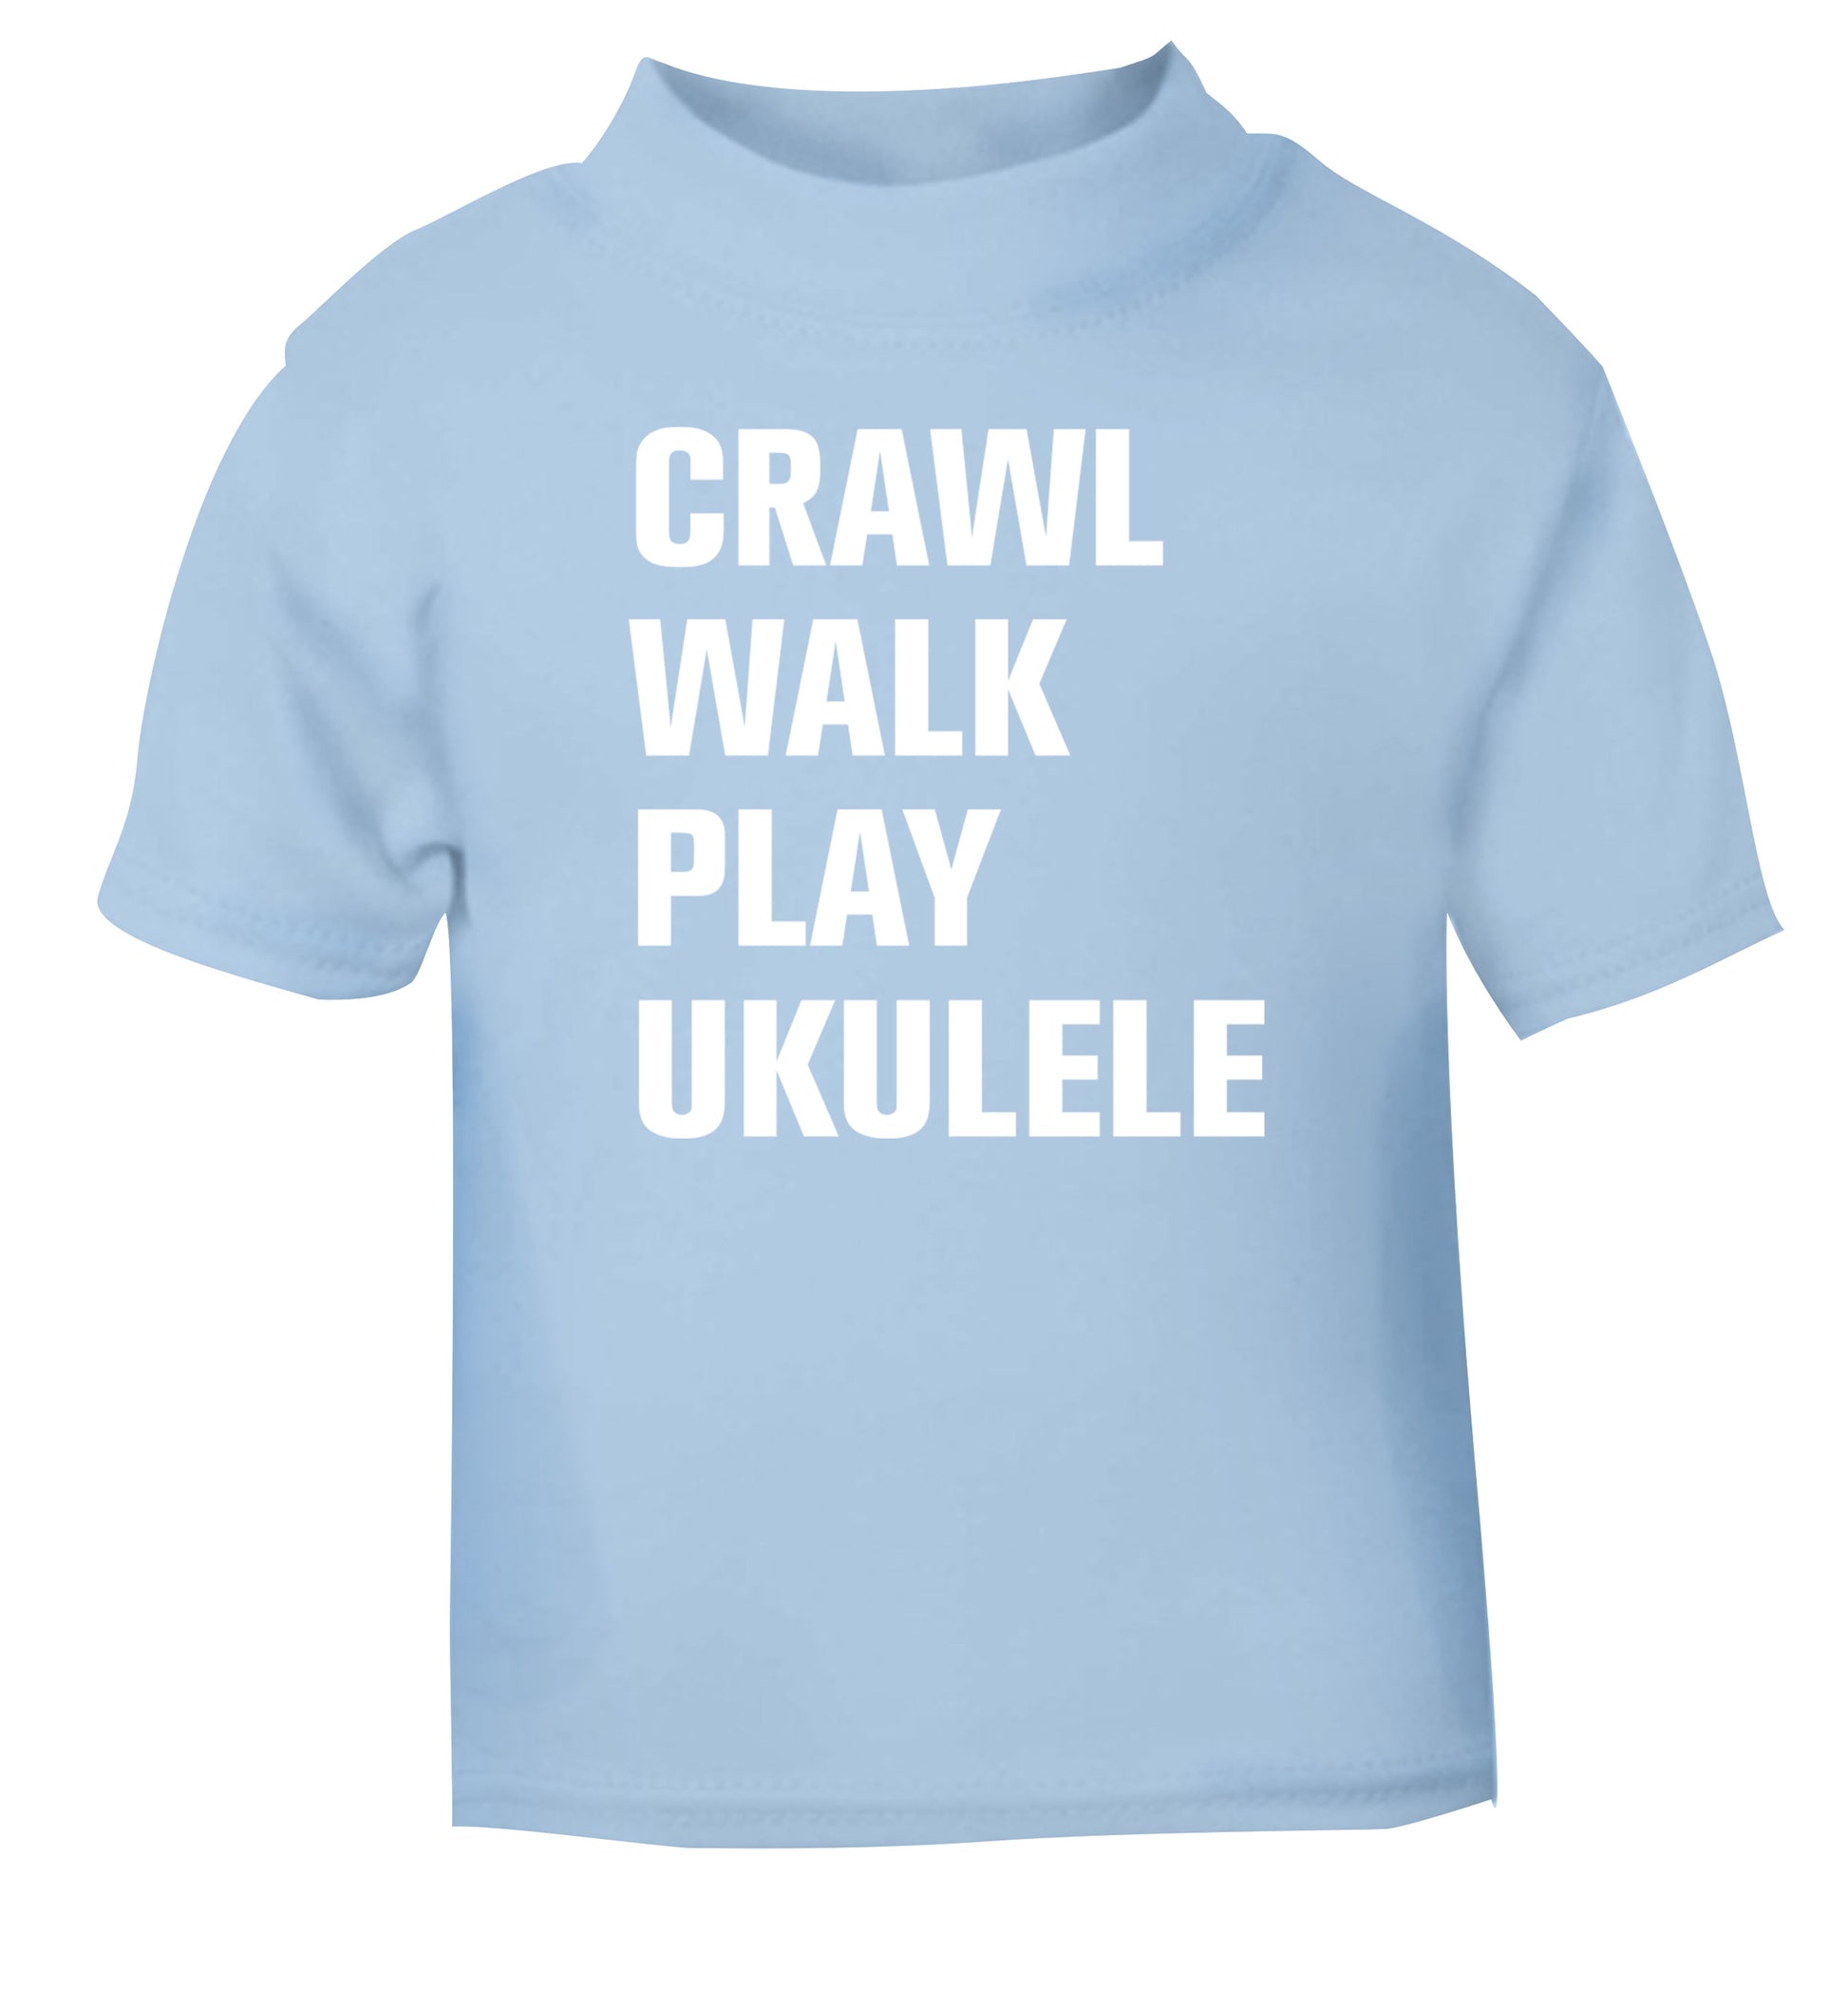 Crawl walk play ukulele light blue Baby Toddler Tshirt 2 Years